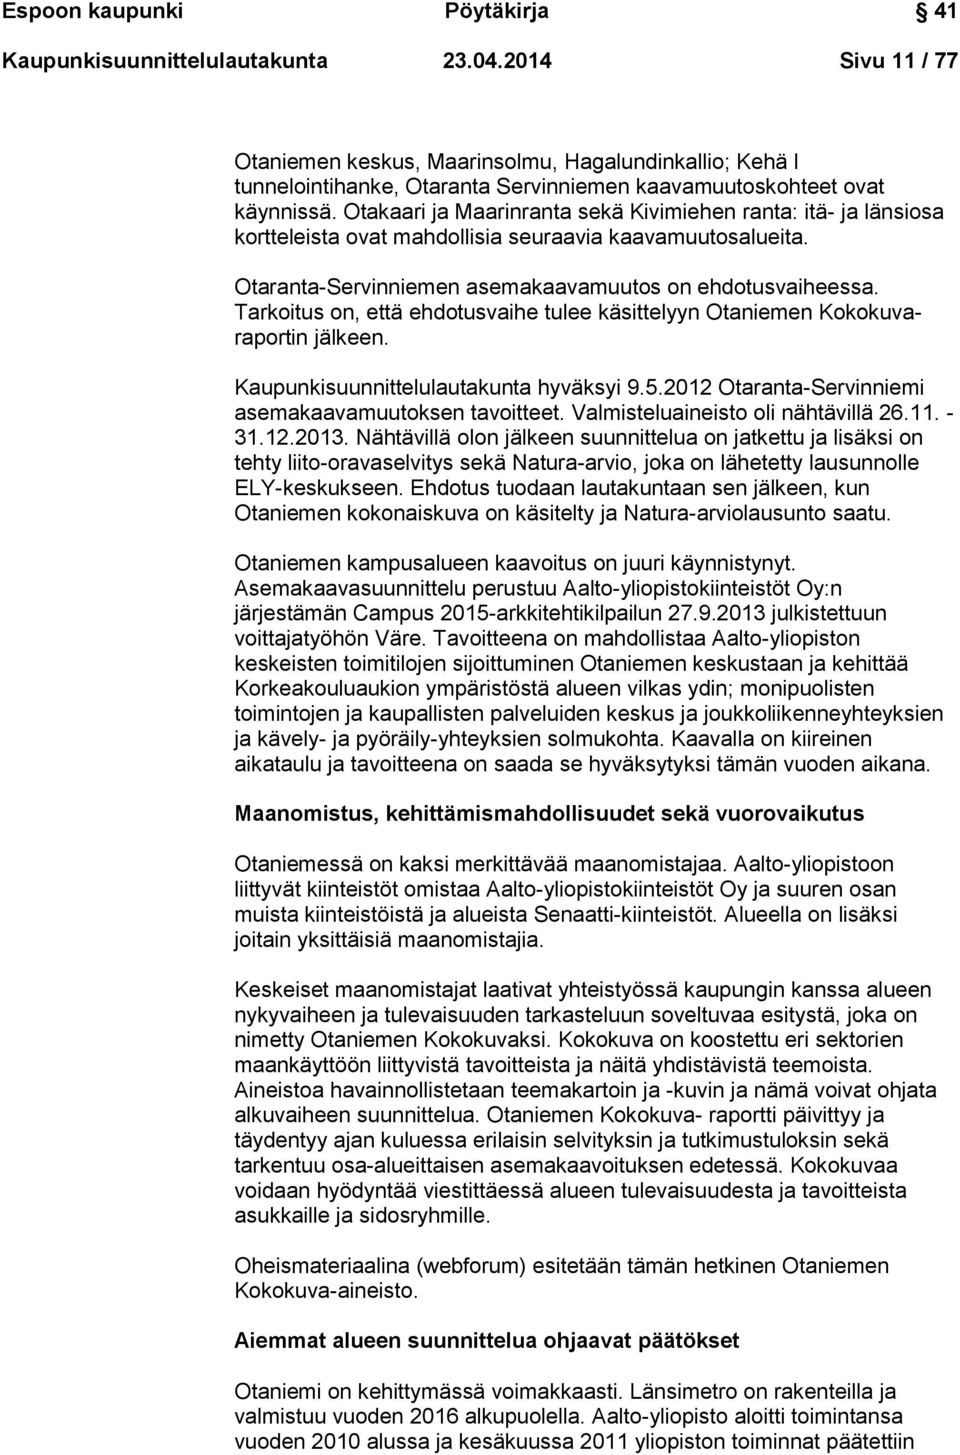 Otakaari ja Maarinranta sekä Kivimiehen ranta: itä- ja länsiosa kortteleista ovat mahdollisia seuraavia kaavamuutosalueita. Otaranta-Servinniemen asemakaavamuutos on ehdotusvaiheessa.